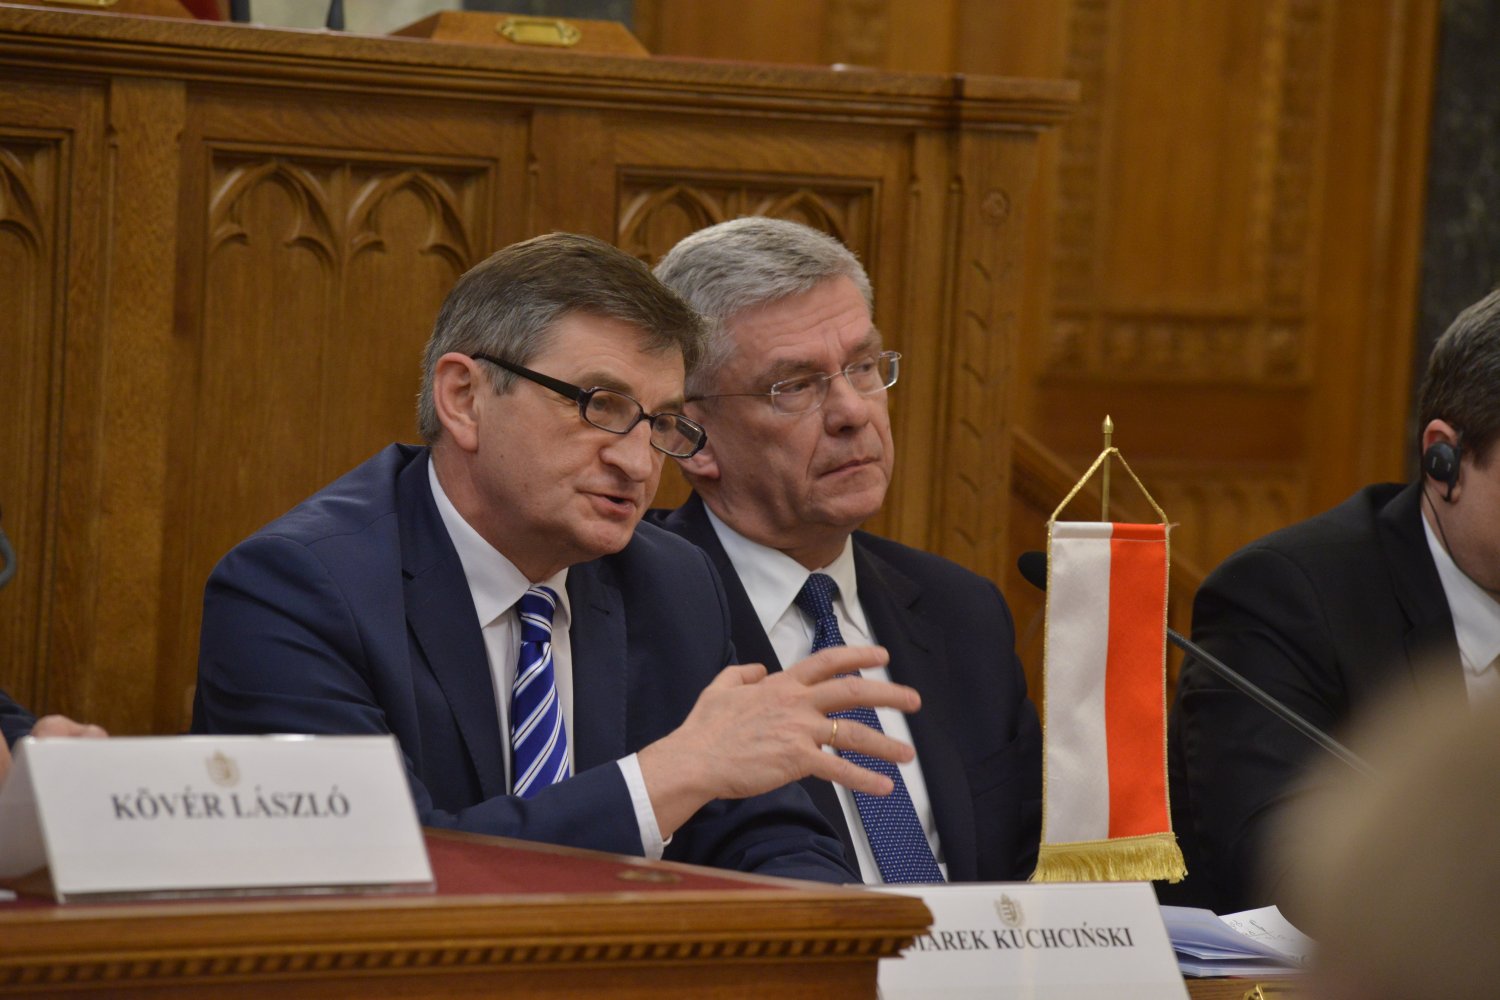 A visegrádi országok házelnökeinek találkozója az Országházban:Marek Kuchcinski, a lengyel képviselőház, a szejm elnöke. Fotó: Sajtóiroda